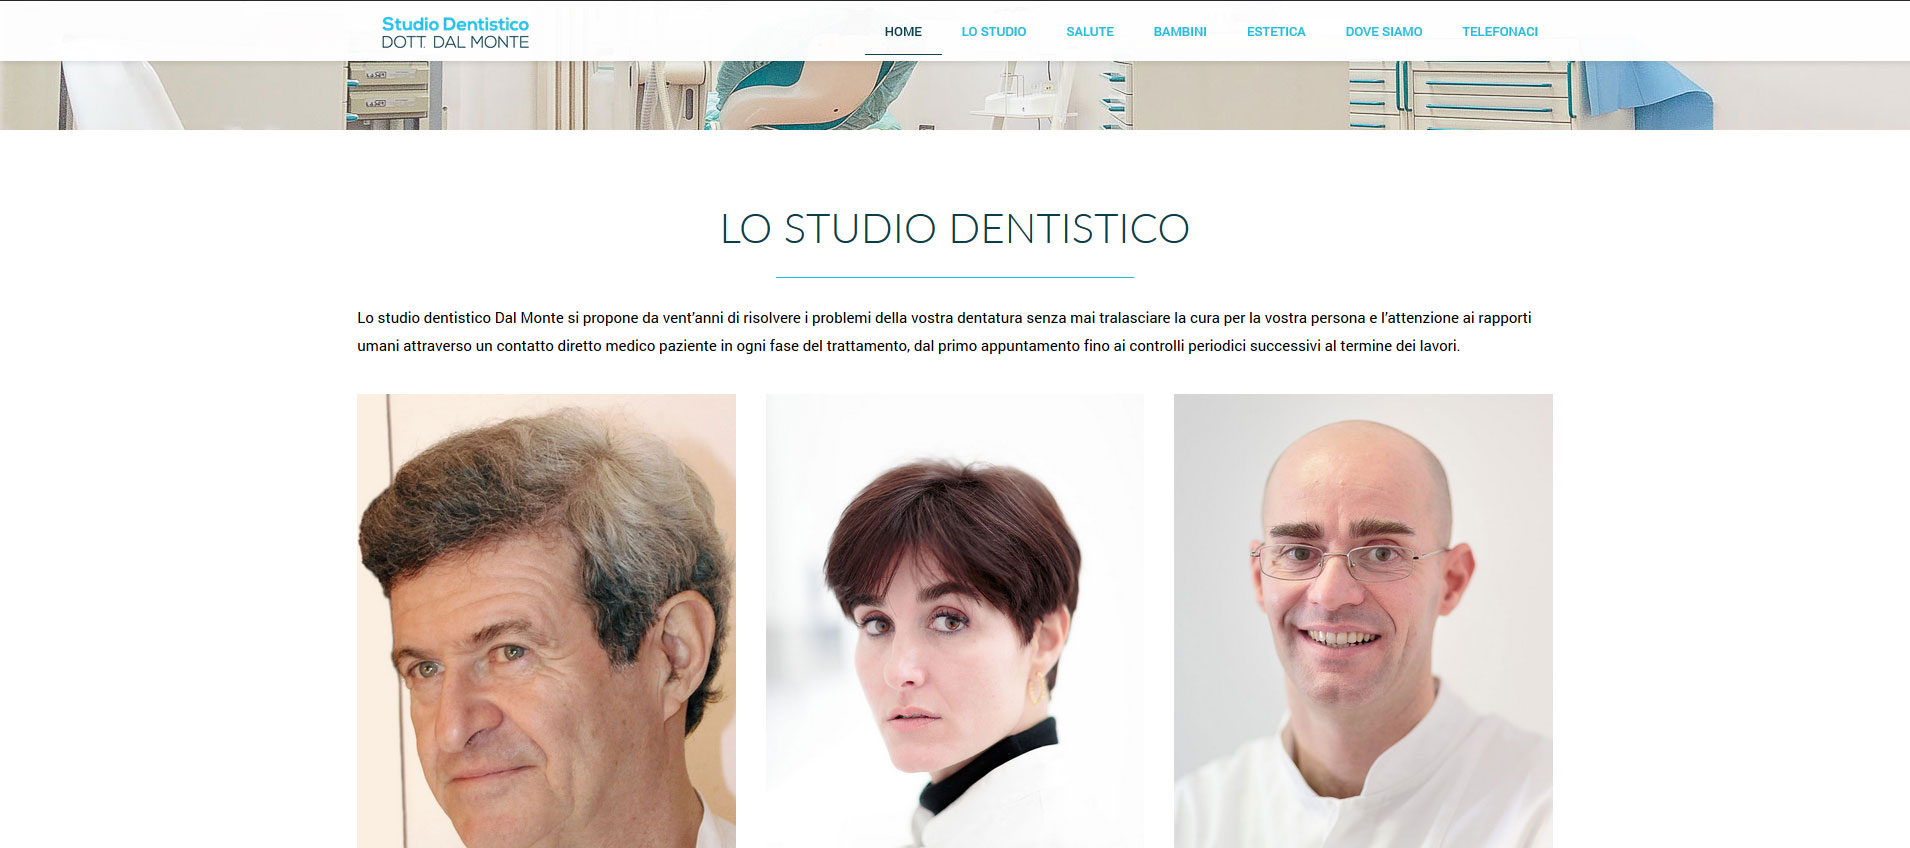 Siti Web Firenze - Studio Dentistico Dott. Dal Monte